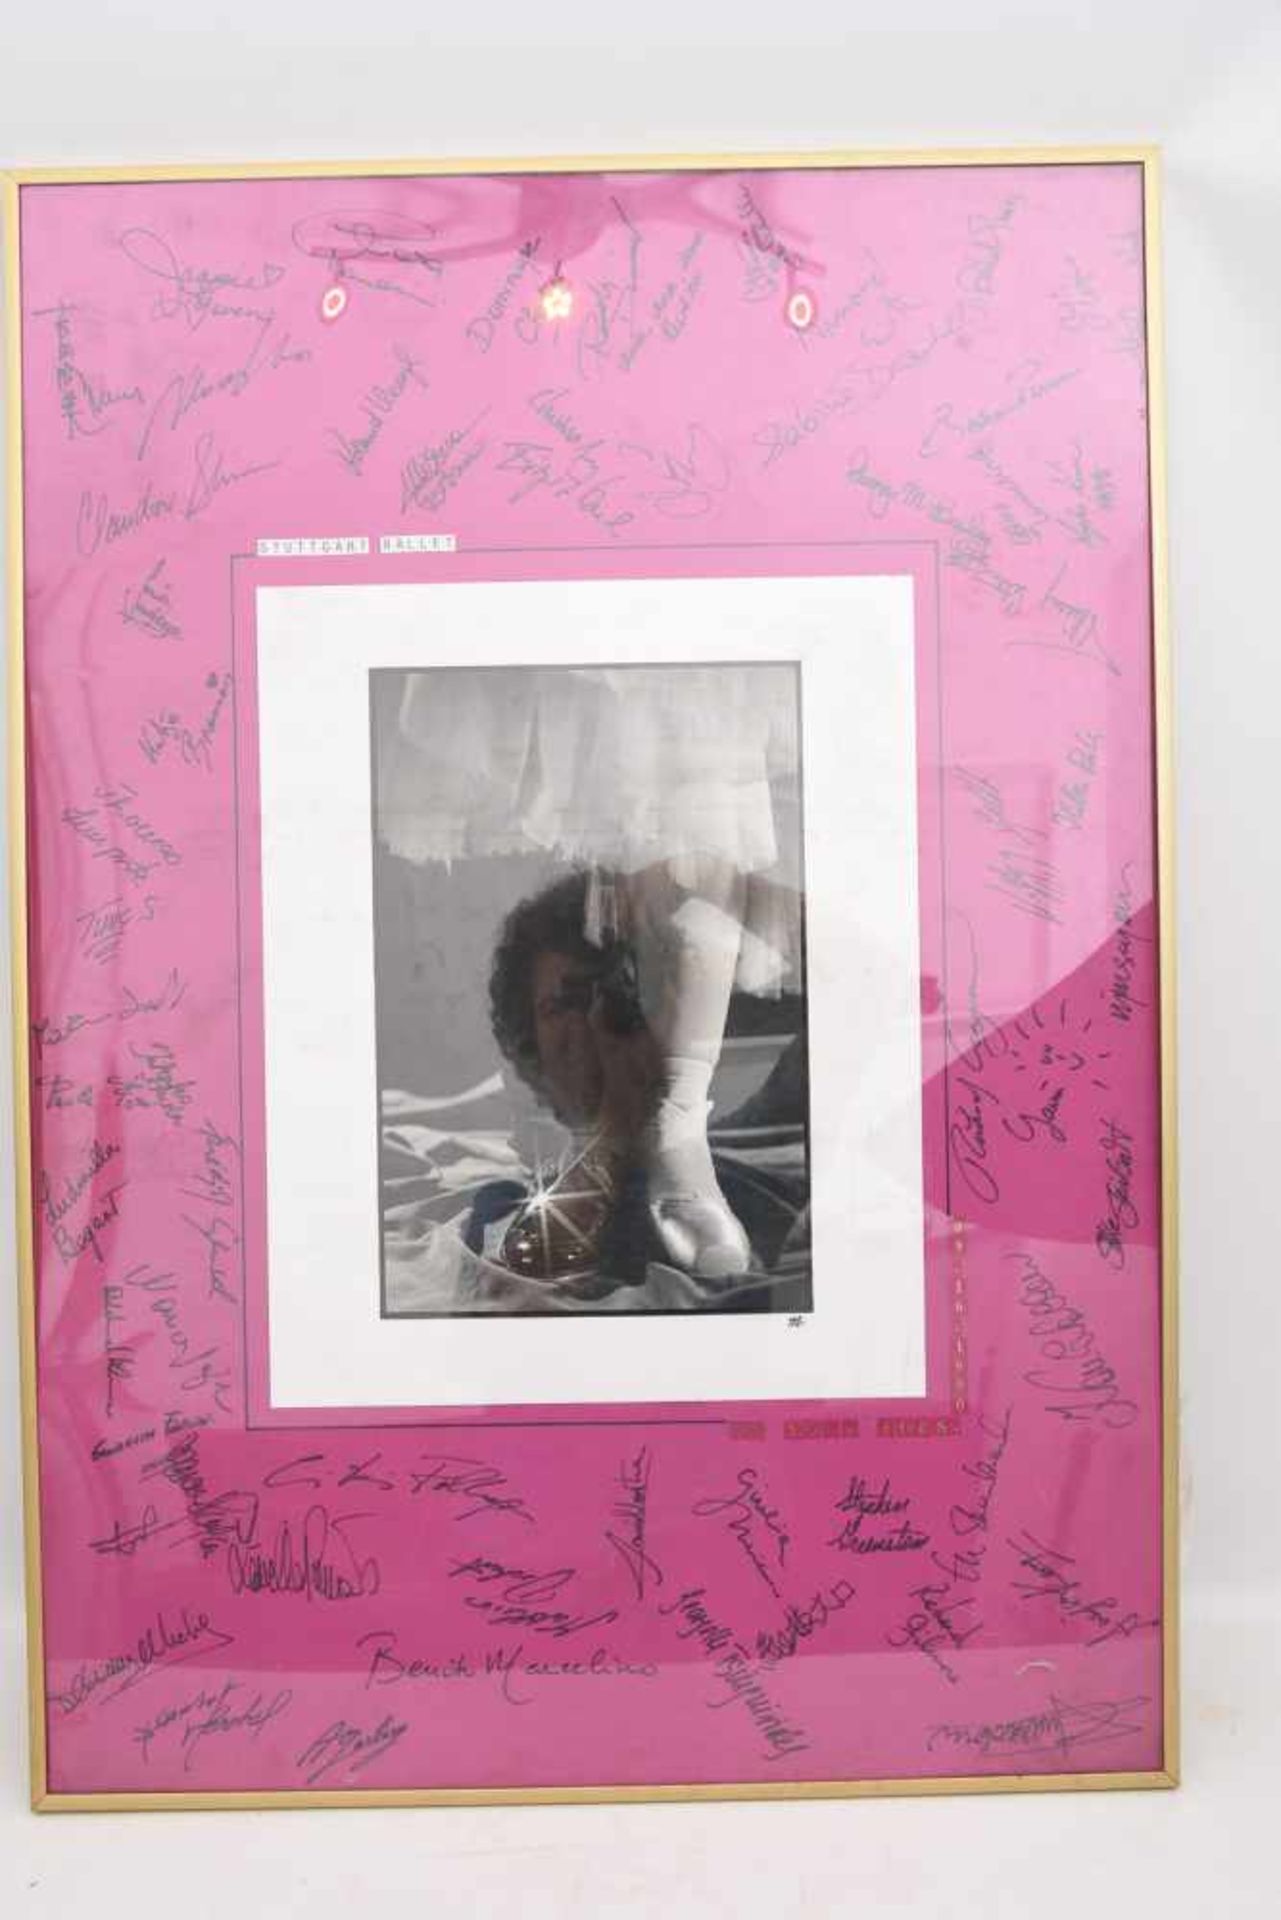 AUTOGRAMM-BILD "STUTTGART BALLET", hinter Glas gerahmt, signiert,1990 Mit zahlreichen Autogrammen